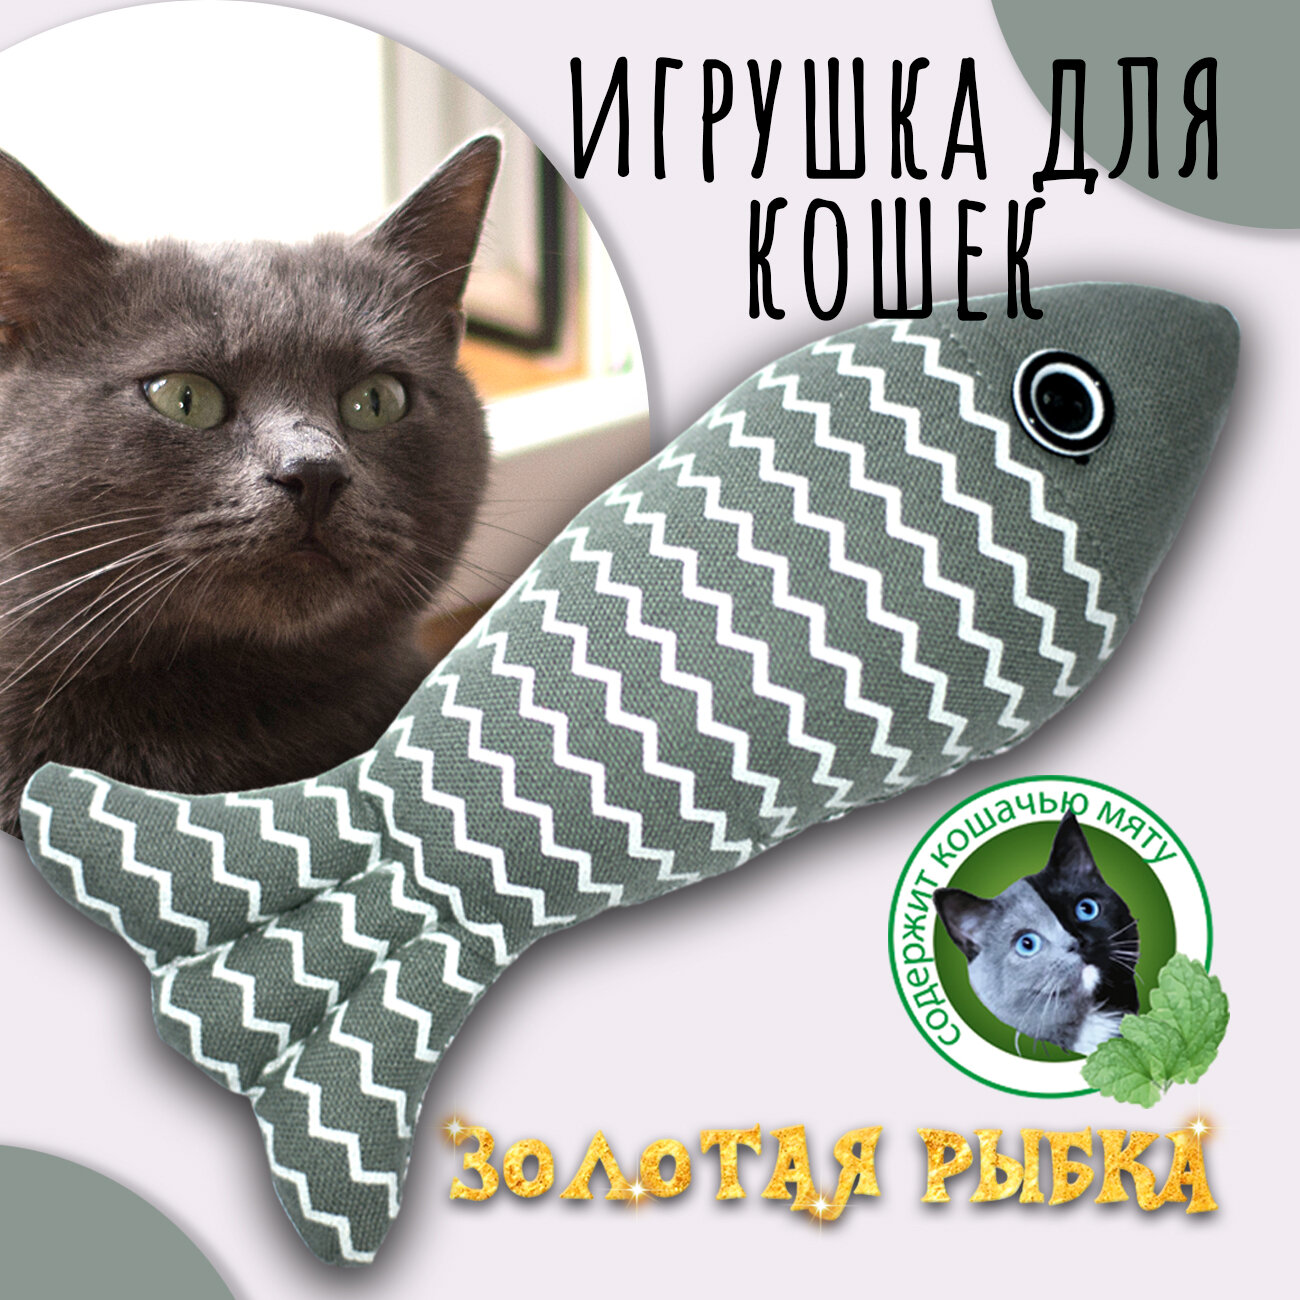 Золотая рыбка" (серая) Priopetko. Игрушка для кошек содержит кошачью мяту. Коллекция "Золотая рыбка